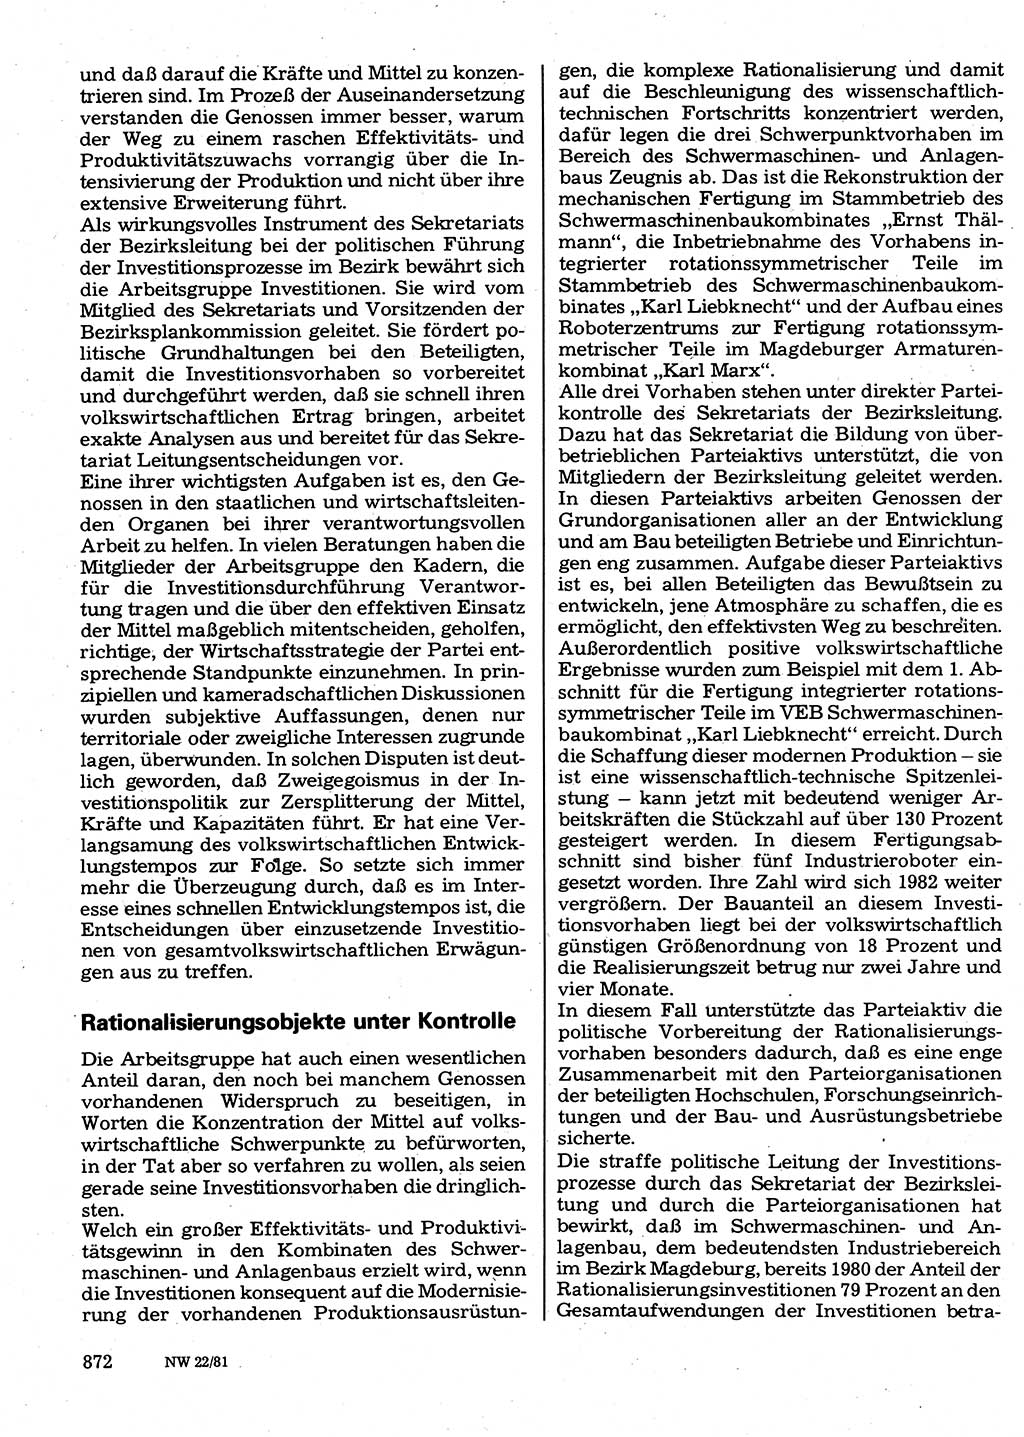 Neuer Weg (NW), Organ des Zentralkomitees (ZK) der SED (Sozialistische Einheitspartei Deutschlands) für Fragen des Parteilebens, 36. Jahrgang [Deutsche Demokratische Republik (DDR)] 1981, Seite 872 (NW ZK SED DDR 1981, S. 872)